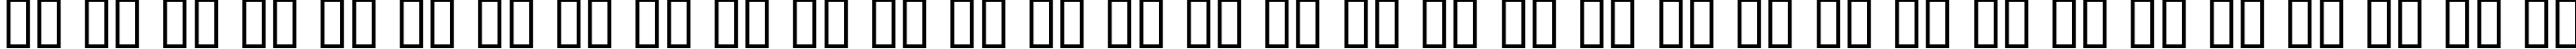 Пример написания русского алфавита шрифтом BulletBalls AOE